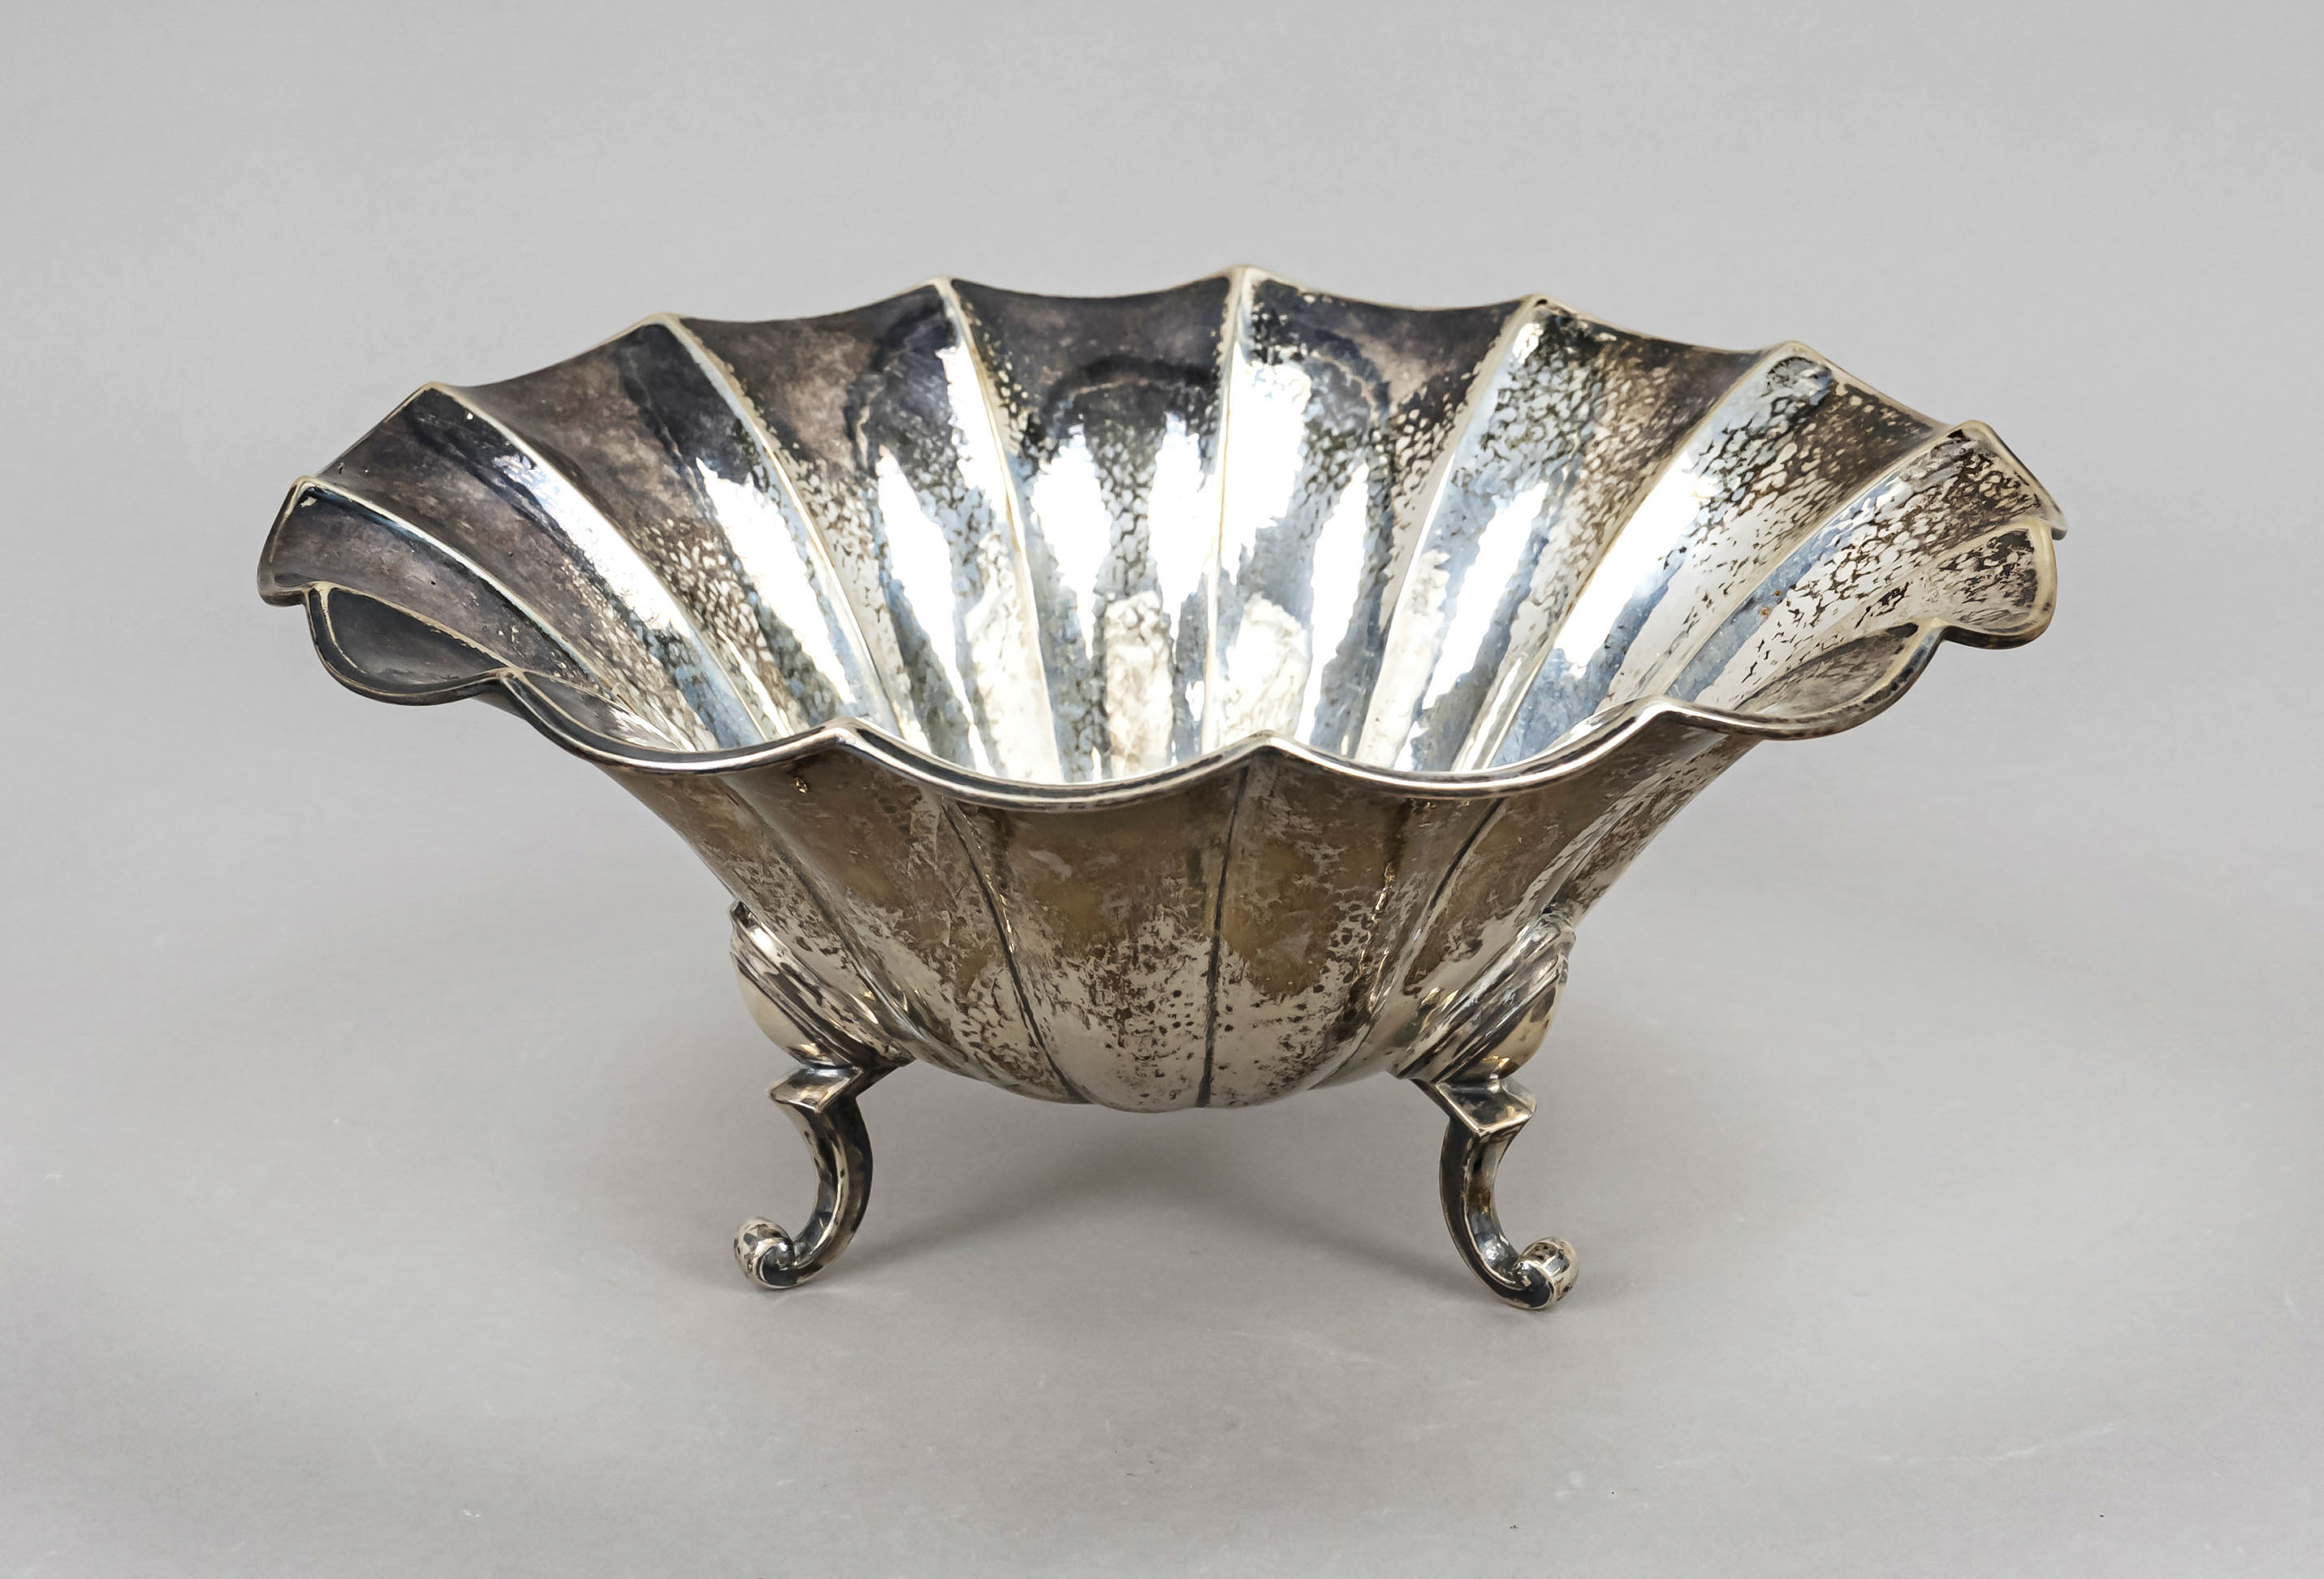 A round Art Deco bowl, c. 1930, maker's mark Gebr. Kühn, Schwäbisch Gmünd, jeweler's mark B. Knauer,